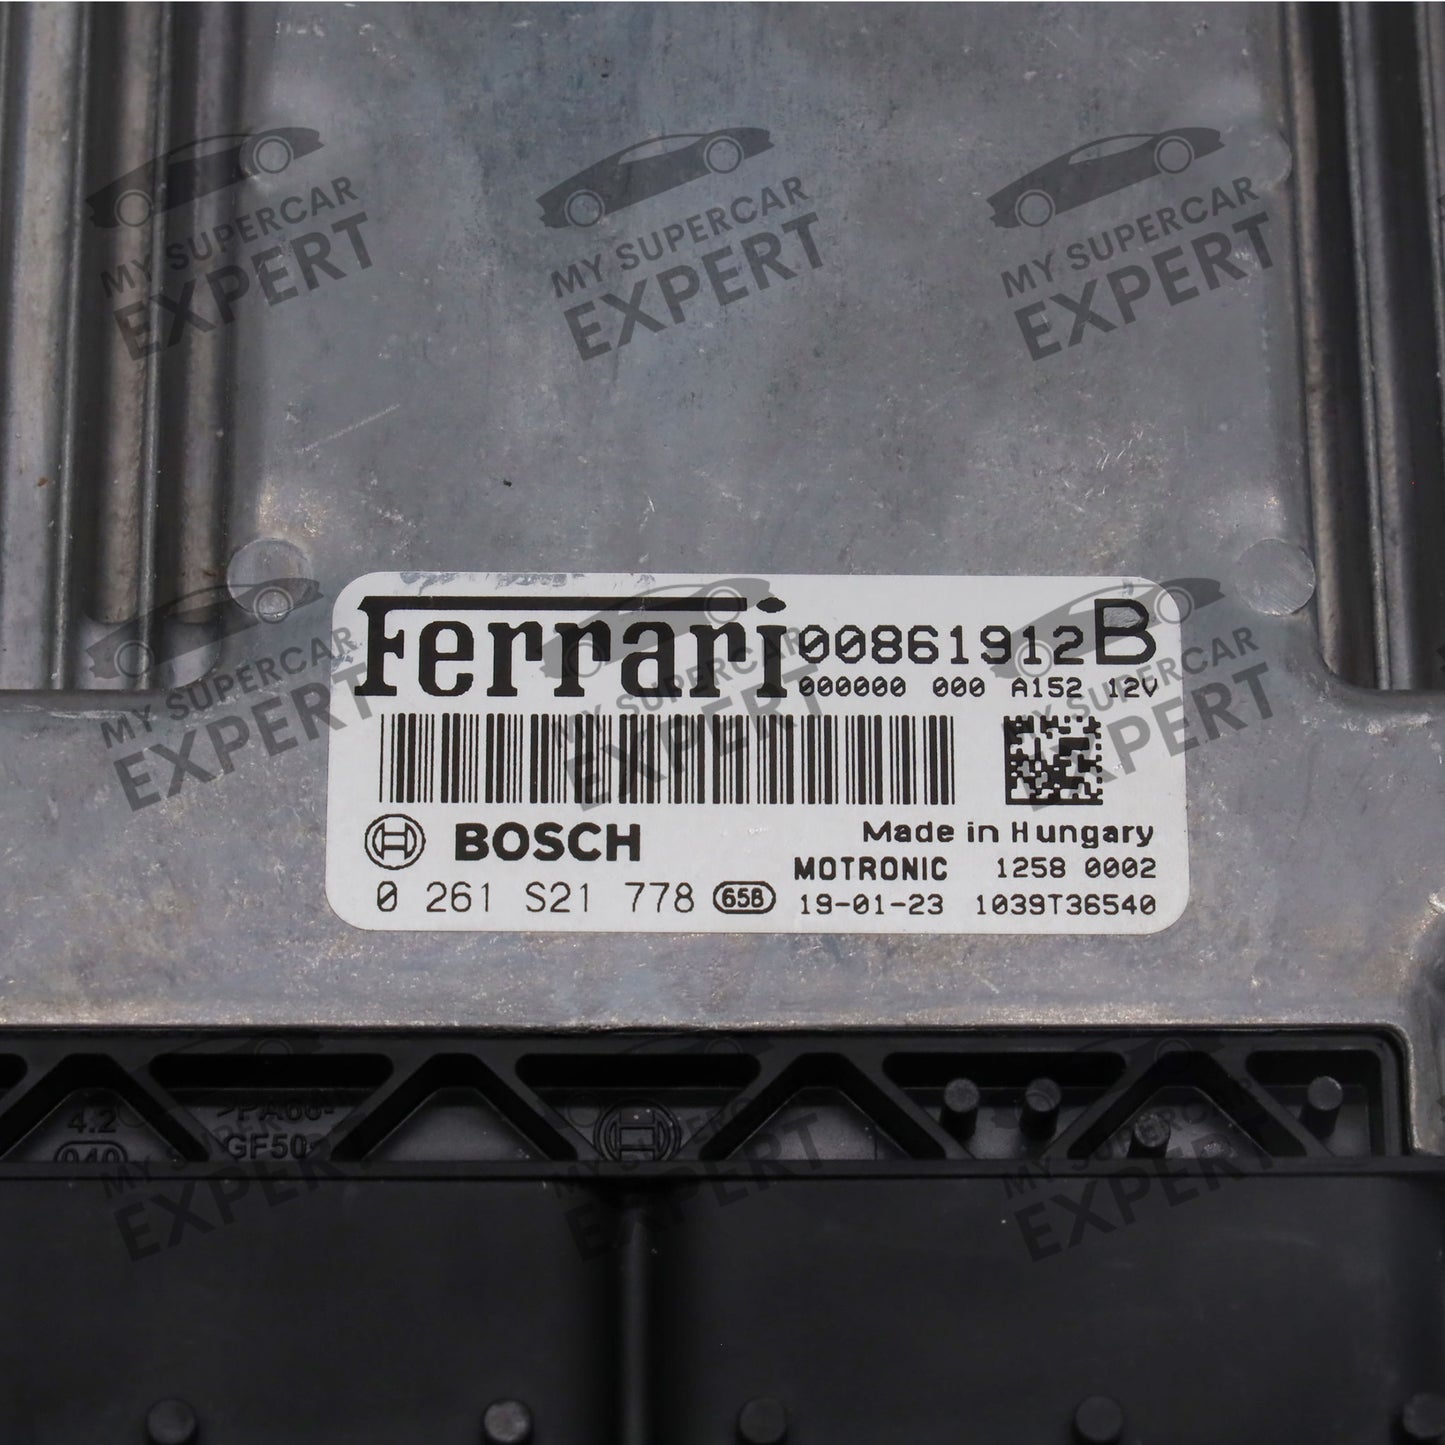 Ferrari 488 (F142M) F8 (F142MFL) 812 (F152M) GTC4Lusso (F151M) Portofino (F164) SF90 (F173) 2015-2023 Bosch MED17.3.5 ECU 00861912B 0261S21778 nuevo